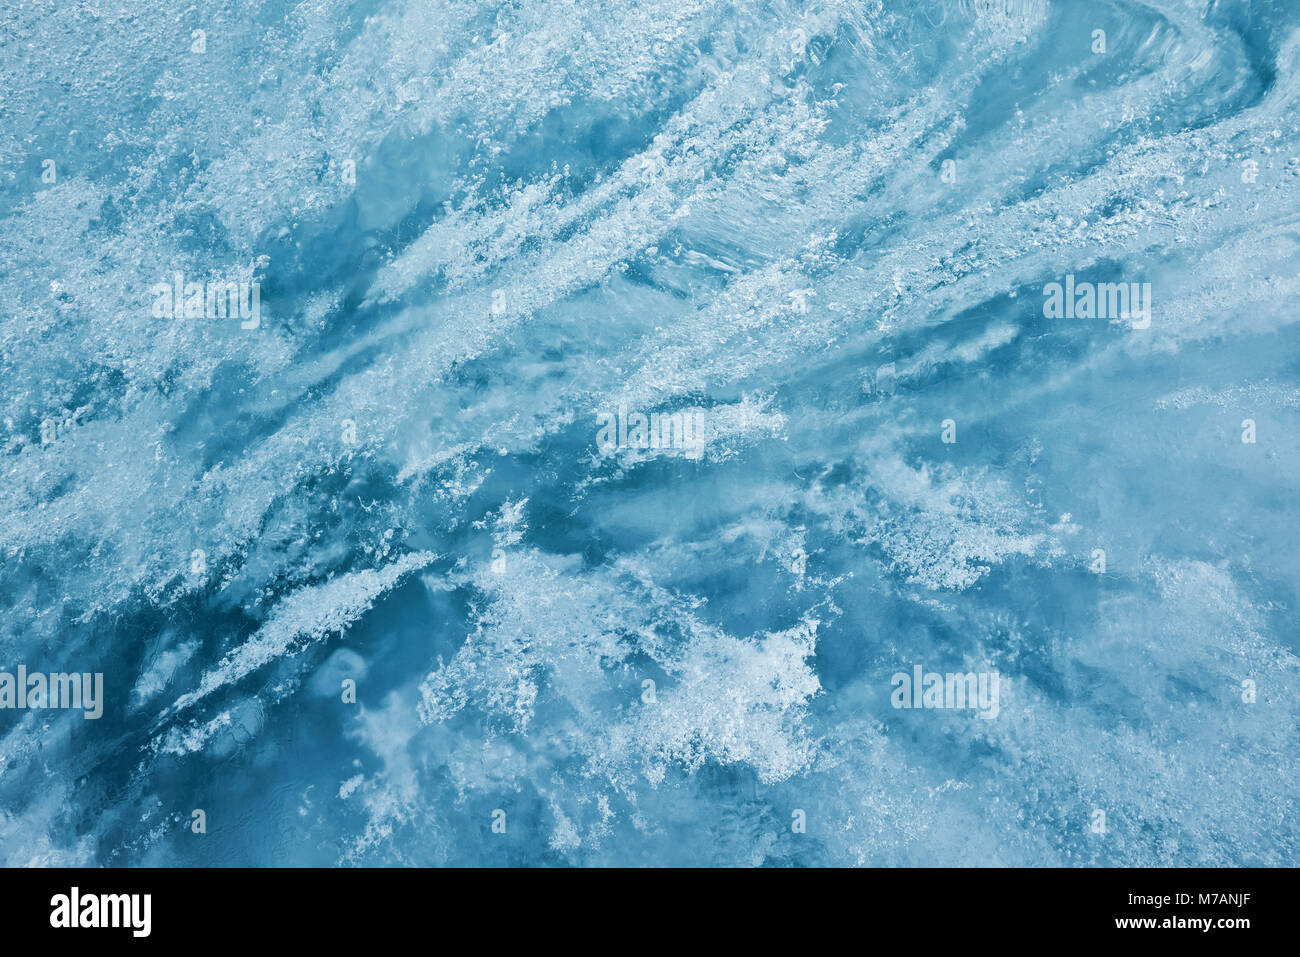 Ghiaccio al ghiacciaio del Rodano, Uri, Svizzera, close-up, dettaglio Foto Stock